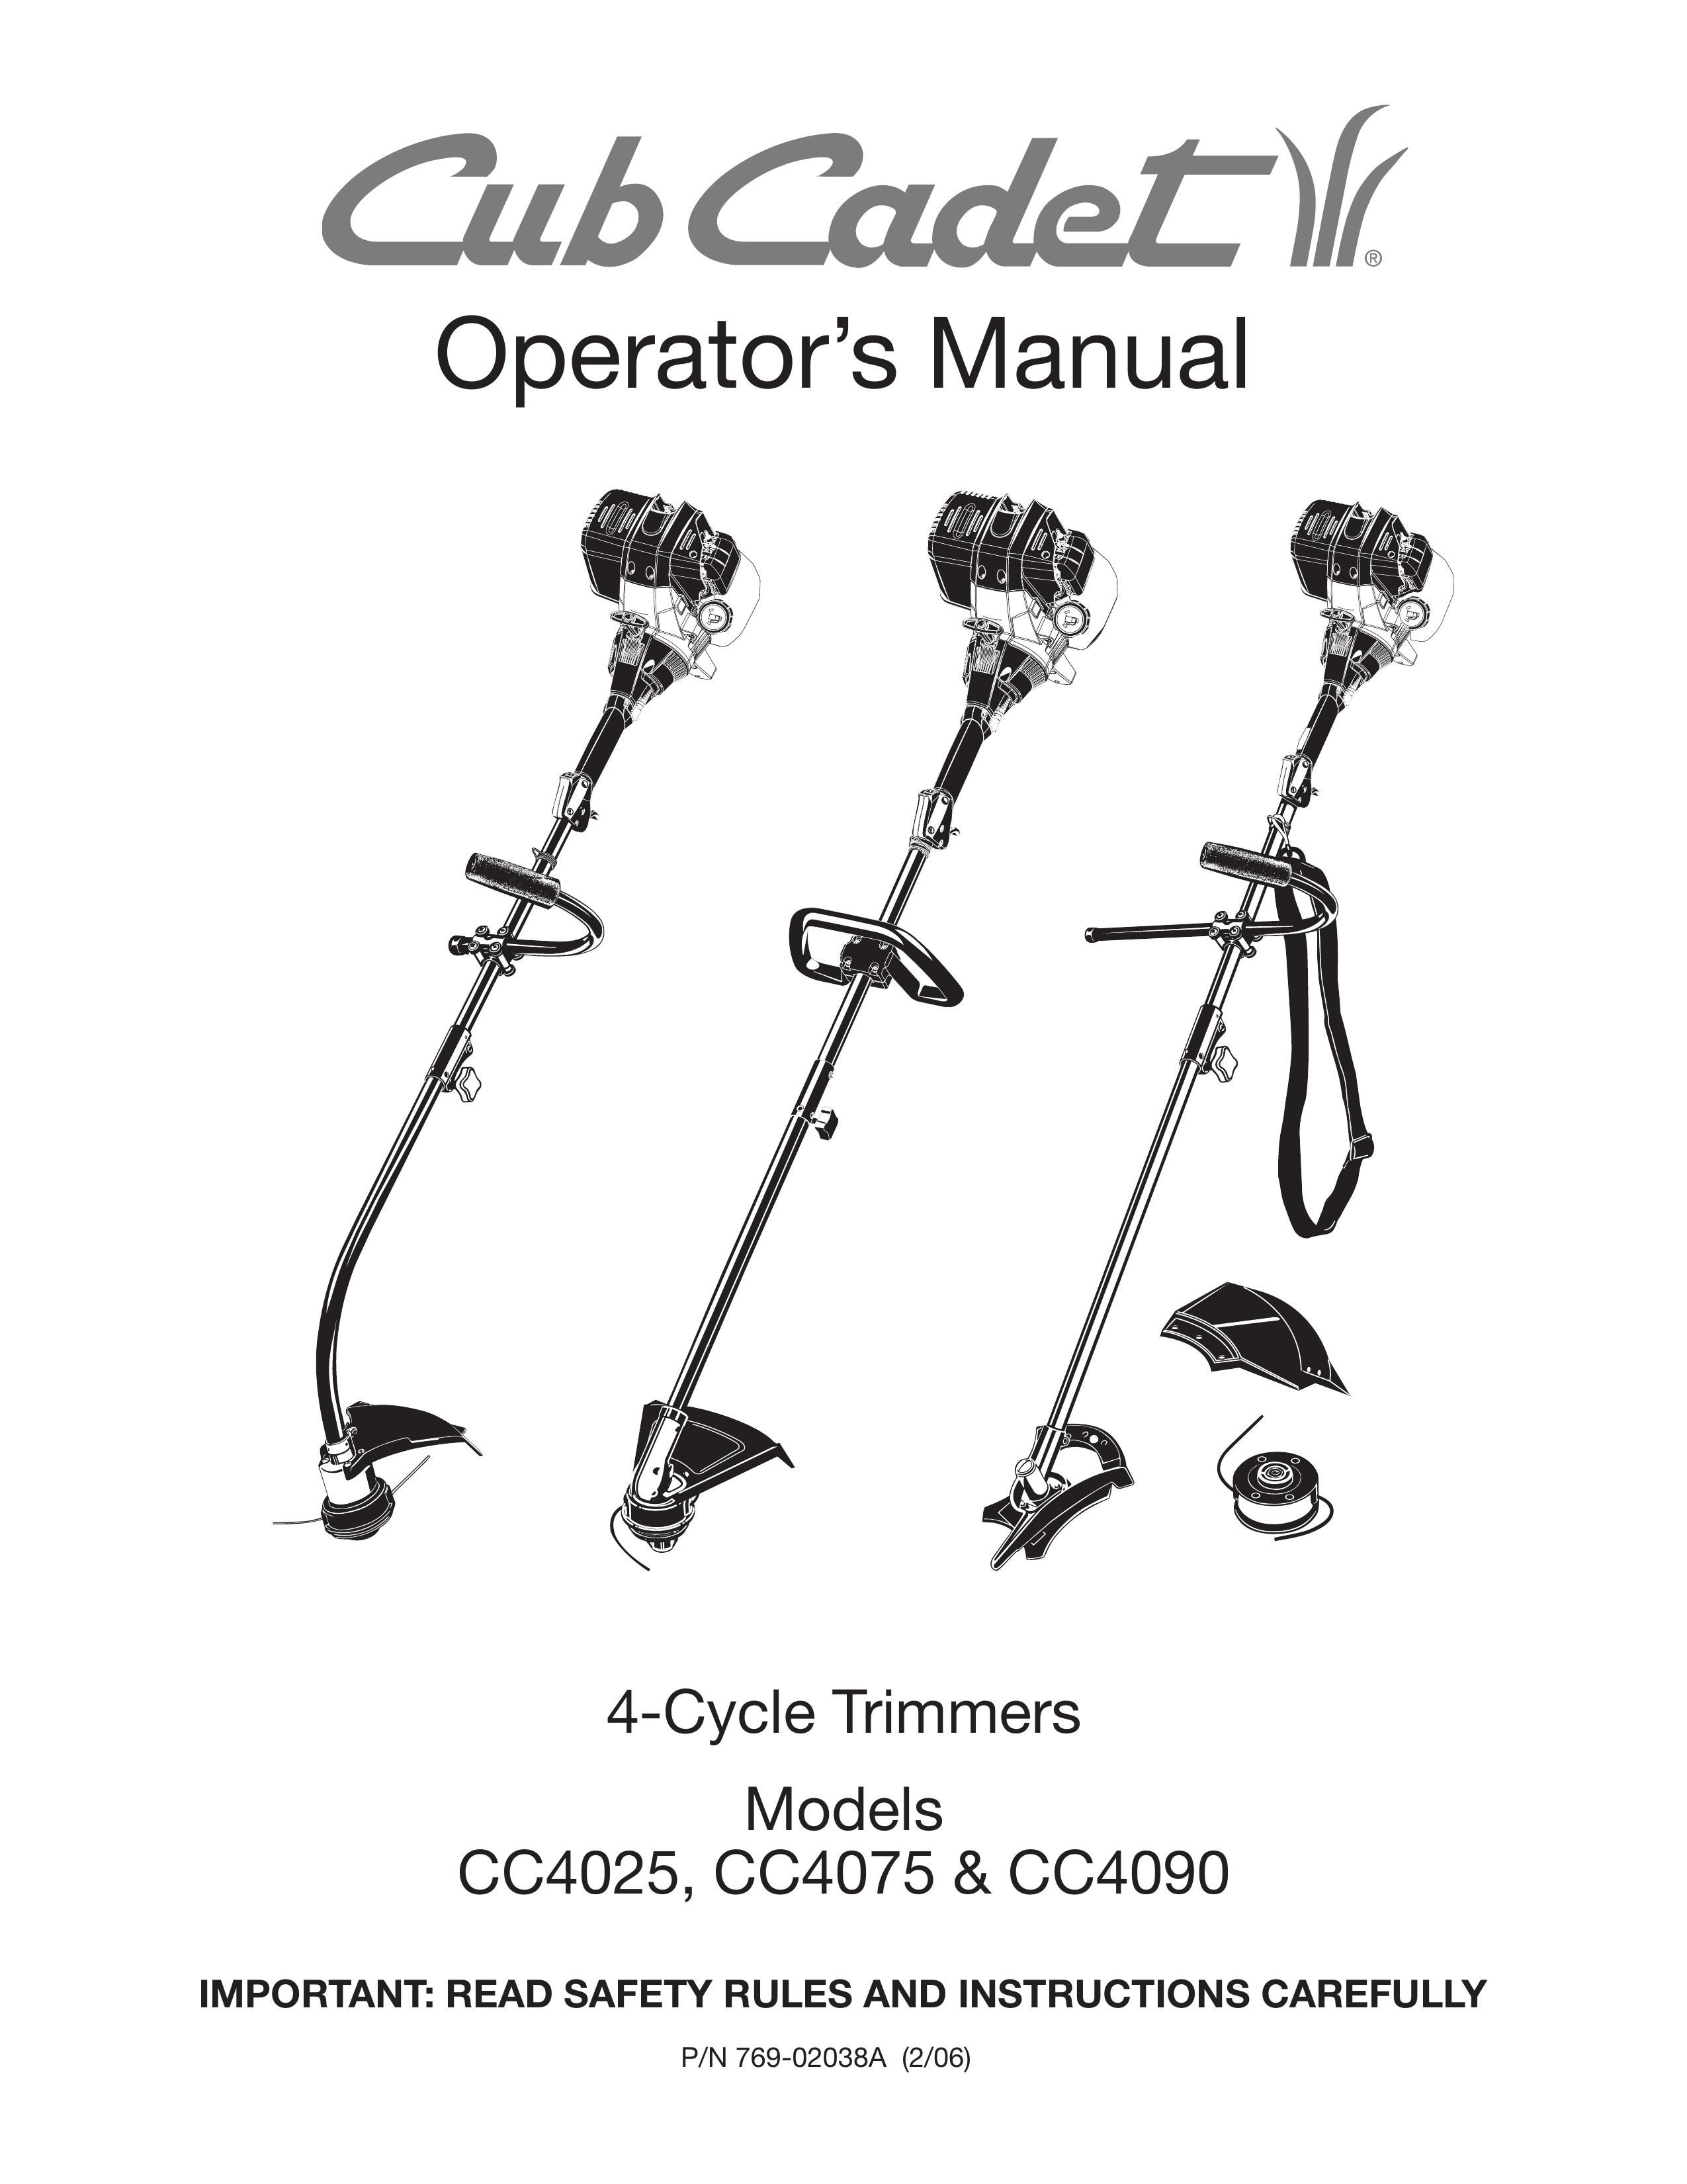 Cub Cadet CC4025 Trimmer User Manual